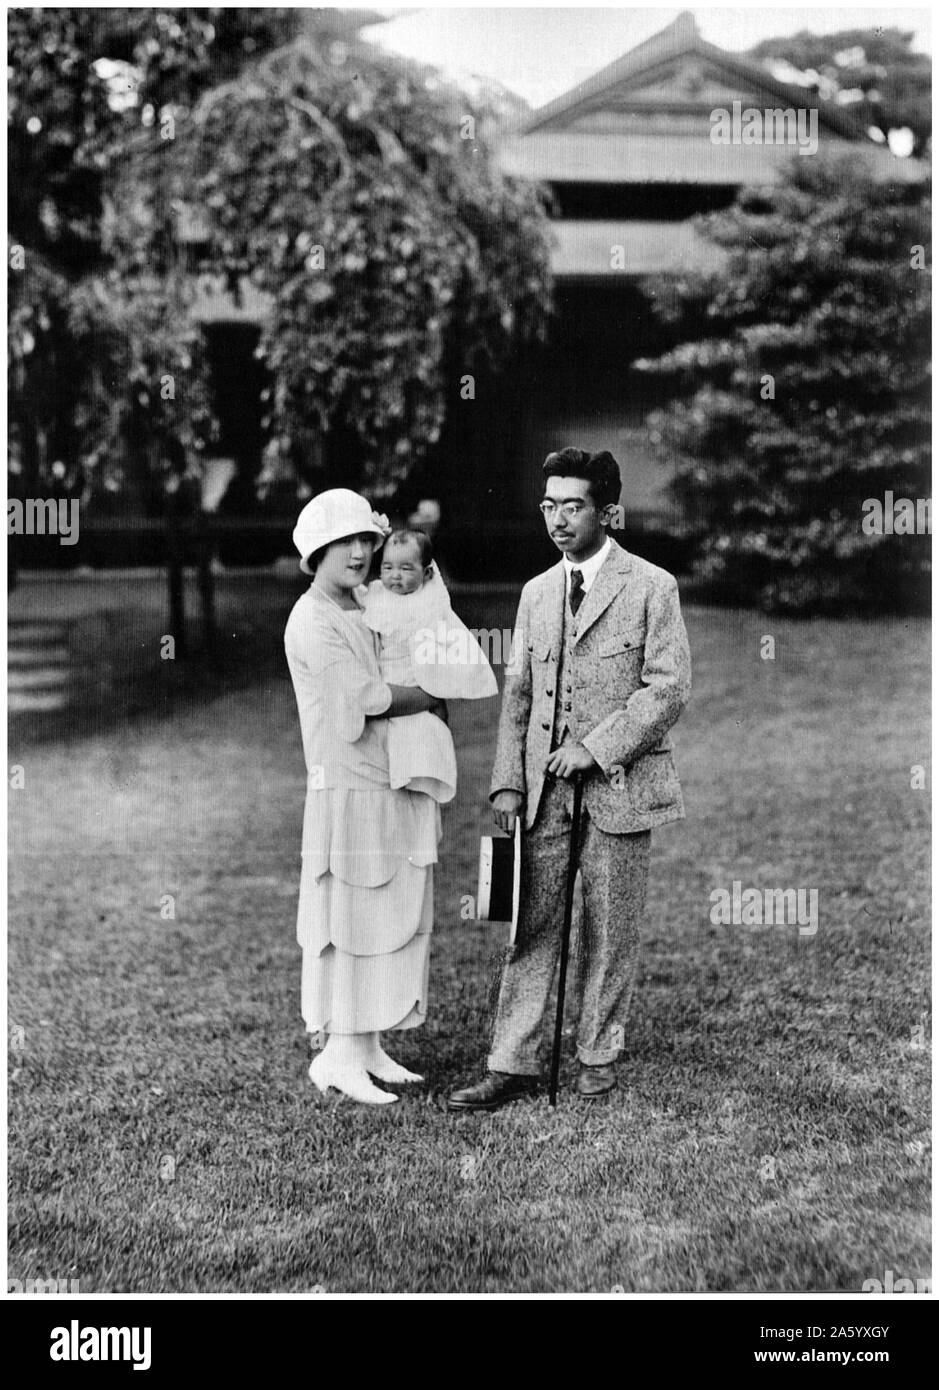 Photographie de l'empereur sh ?wa (1901-1989) Empereur du Japon, également connu sous le nom de Hirohito, l'Impératrice K ?jun et leur fille Shigeko Higashikuni (1925-1961). Datée 1925 Banque D'Images